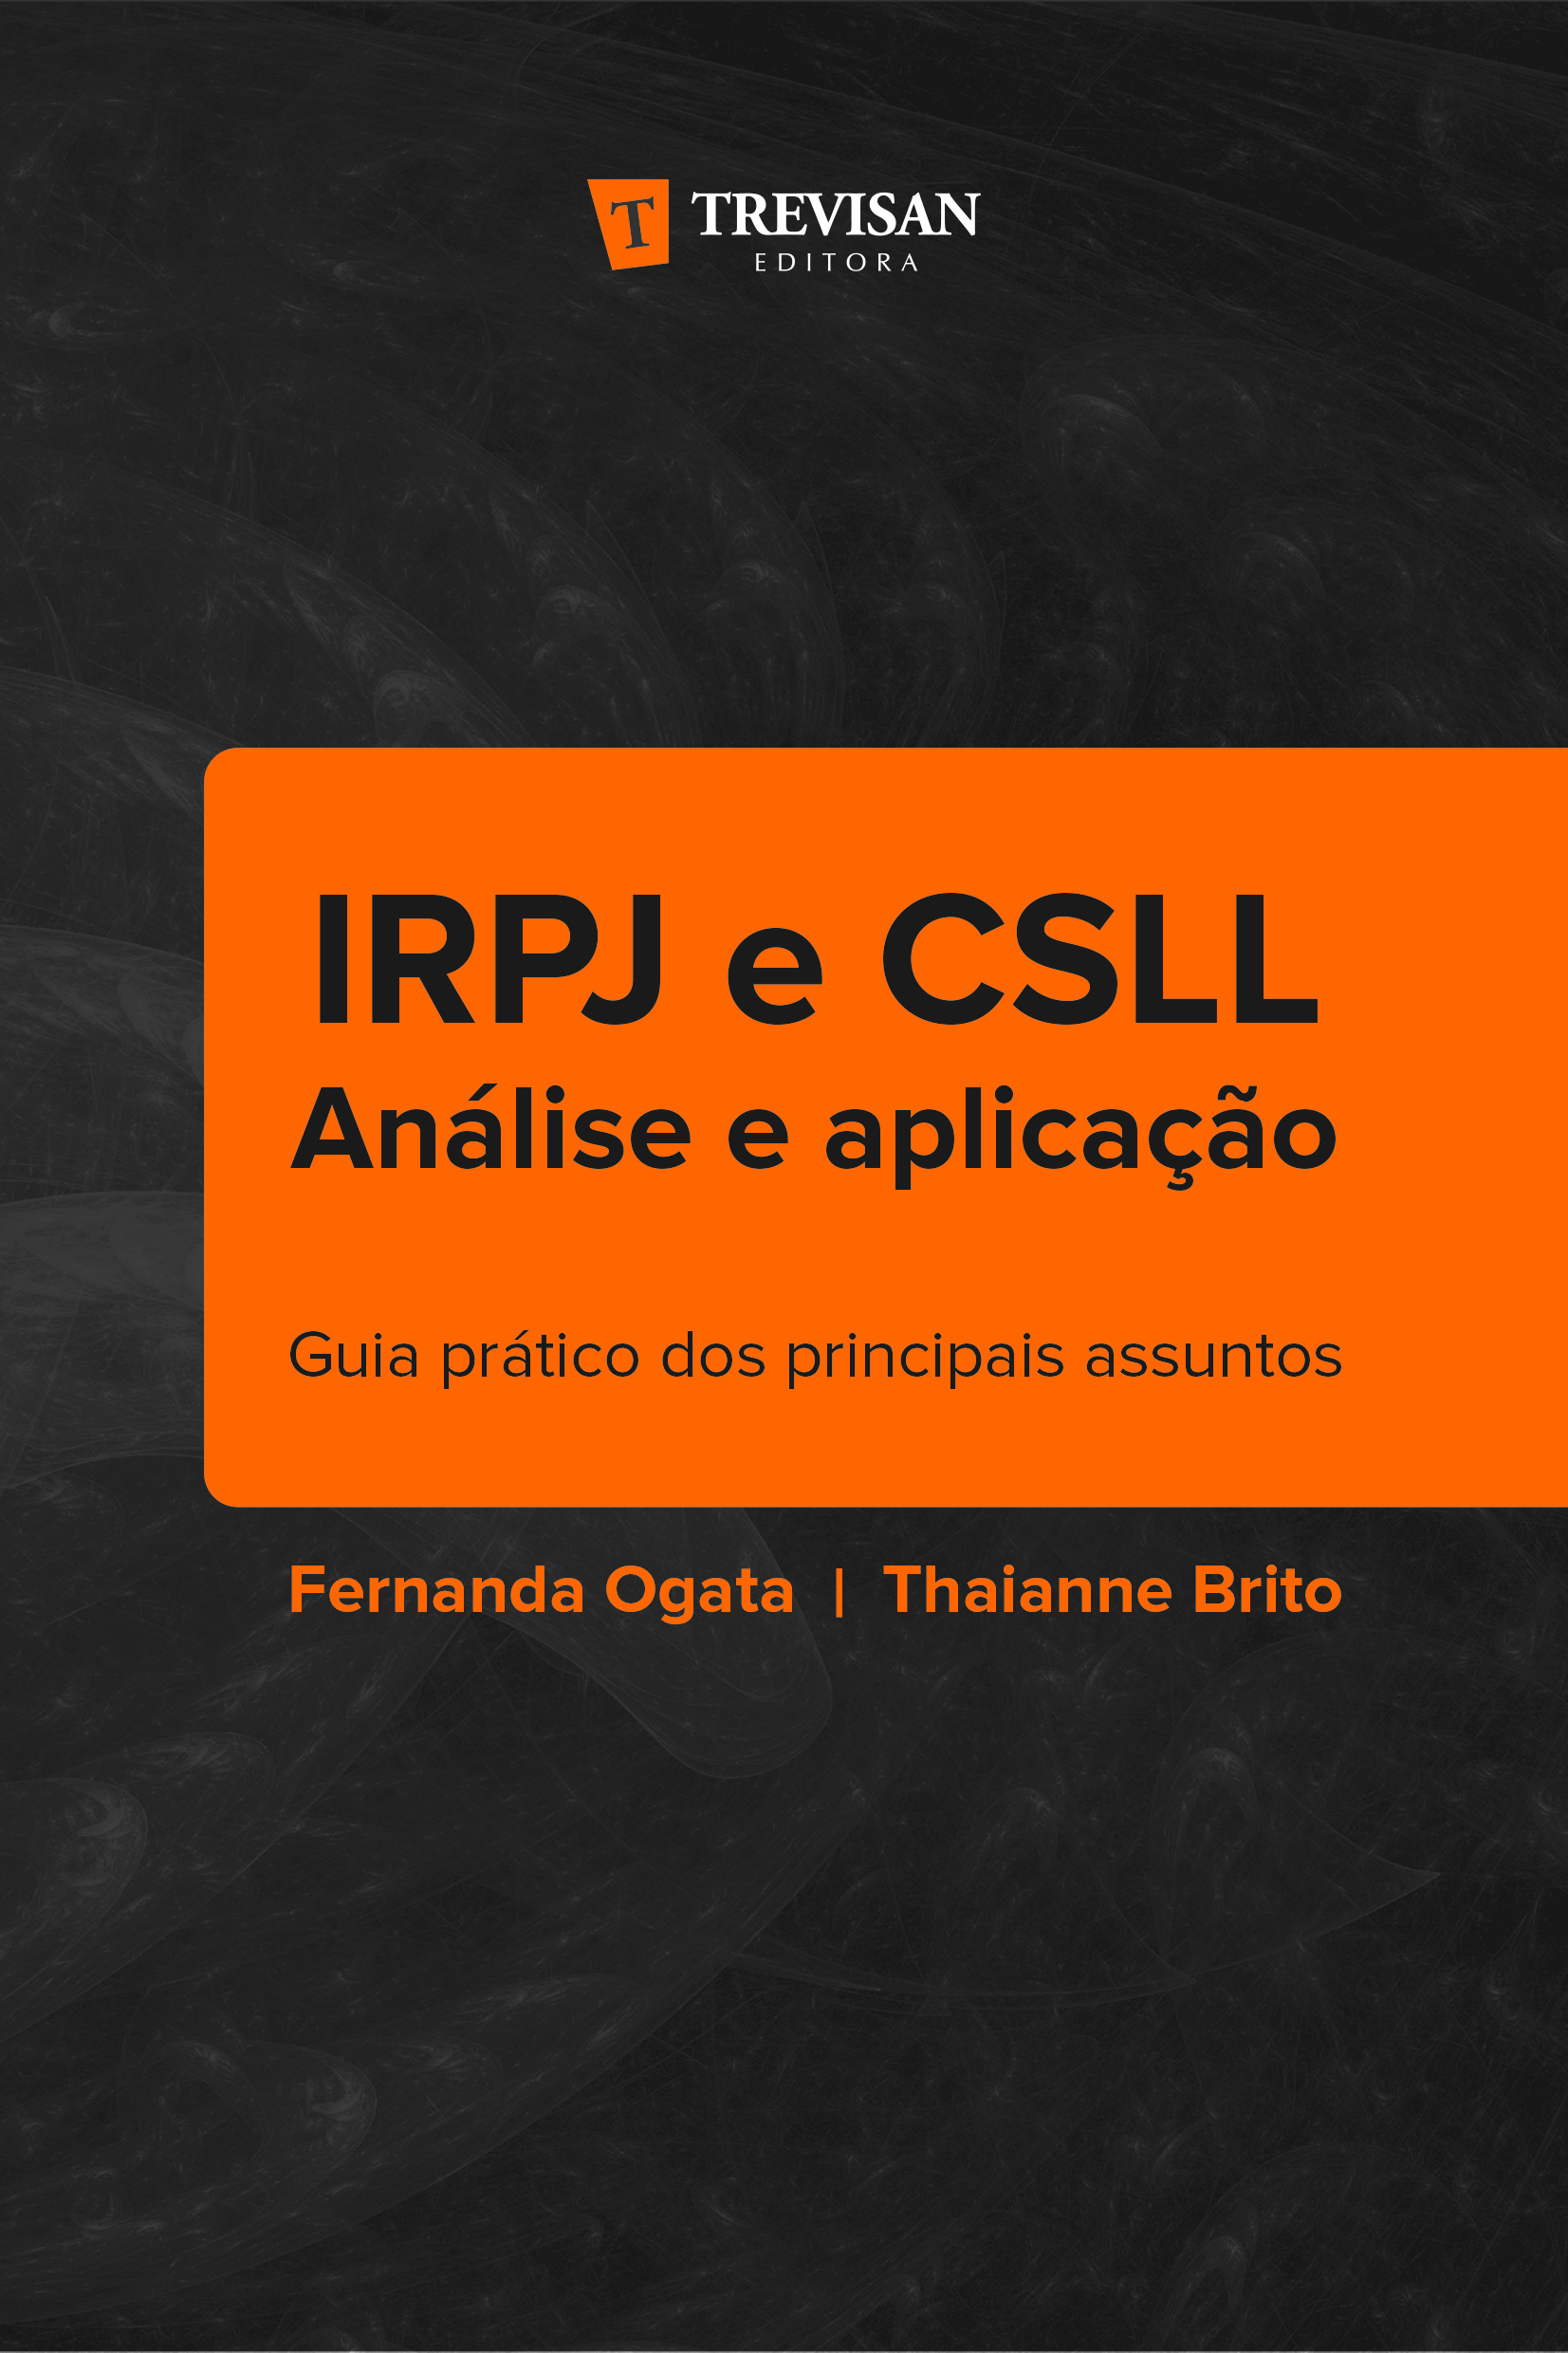 IRPJ e CSLL análise e aplicação : Guia prático dos principais assuntos